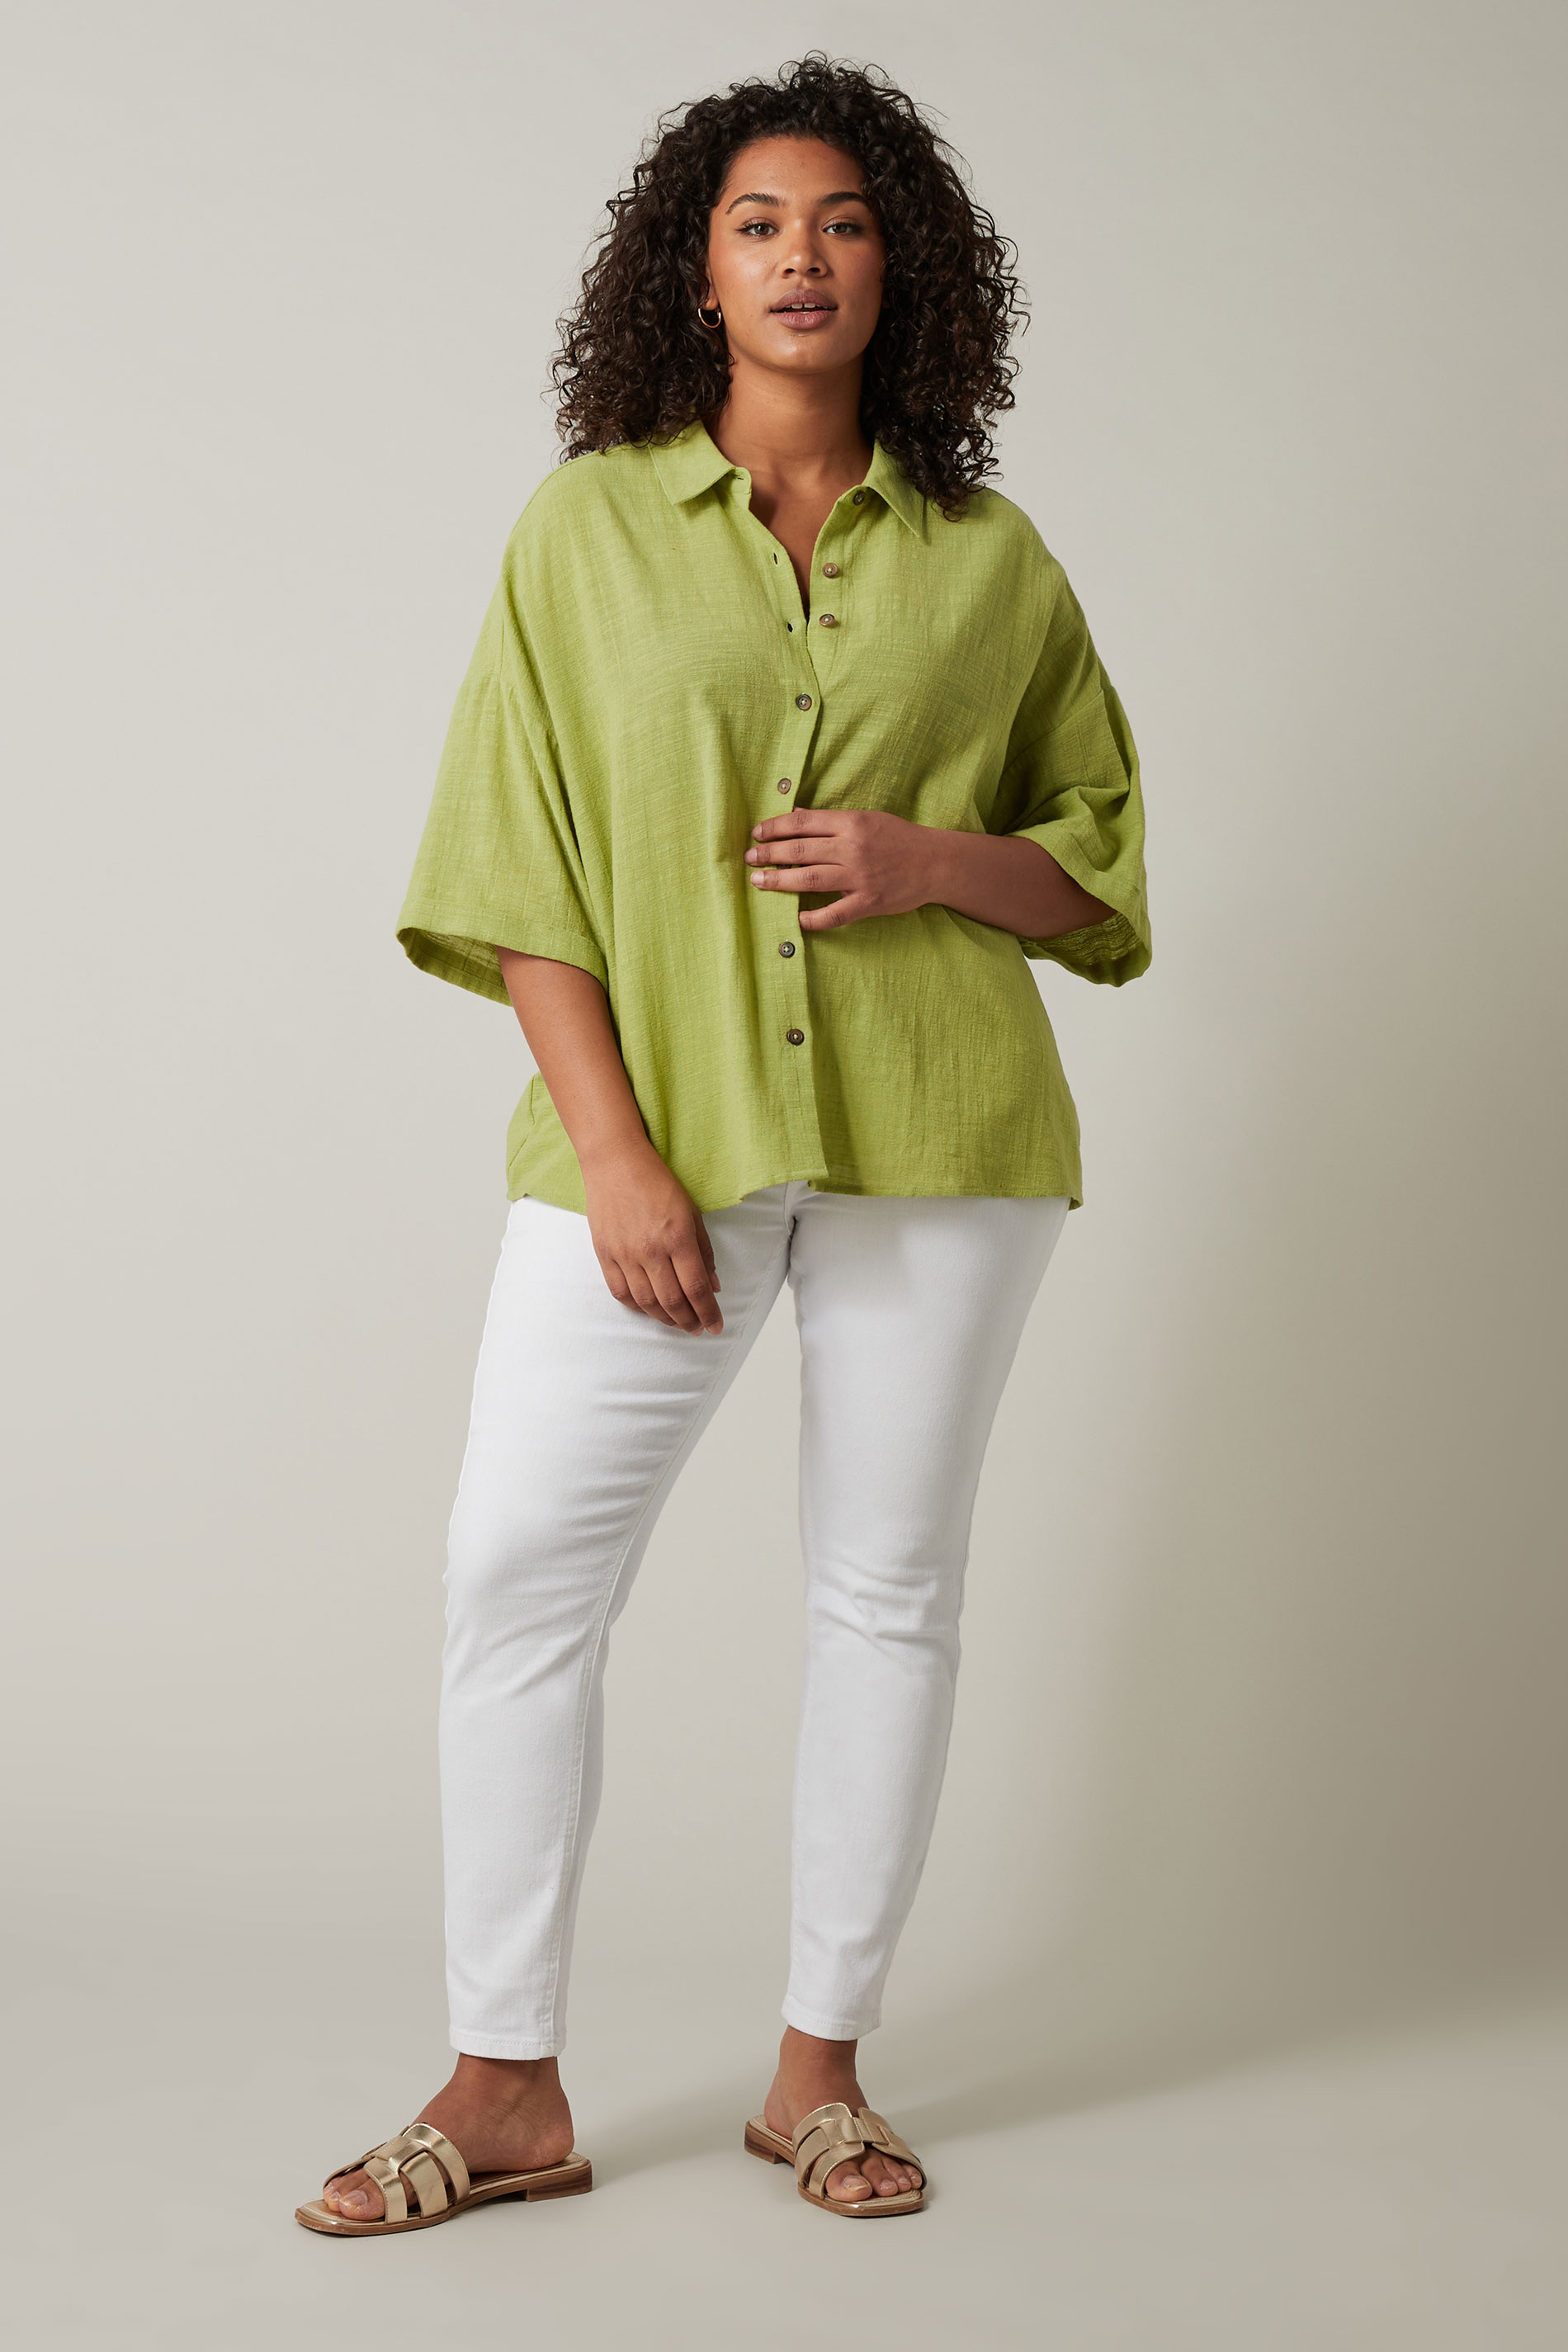 EVANS Plus Size Chartreuse Green Cotton Shirt | Evans 2